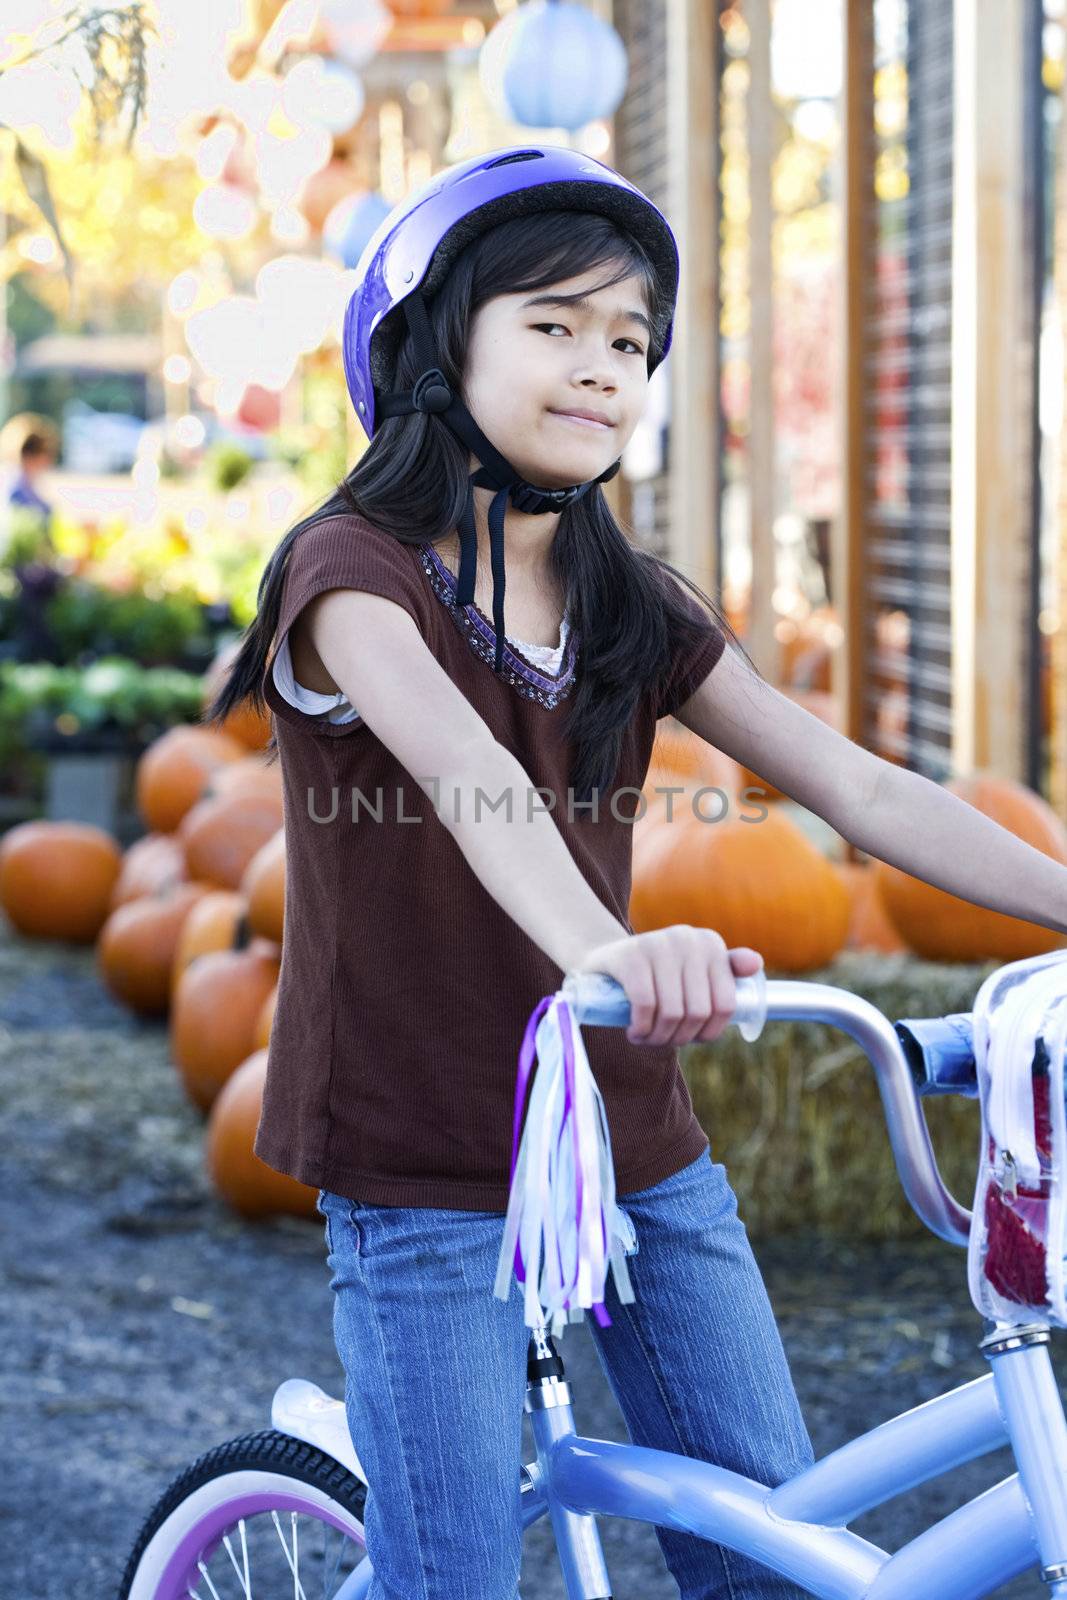 Little girl with purple bike helmet on bicycle